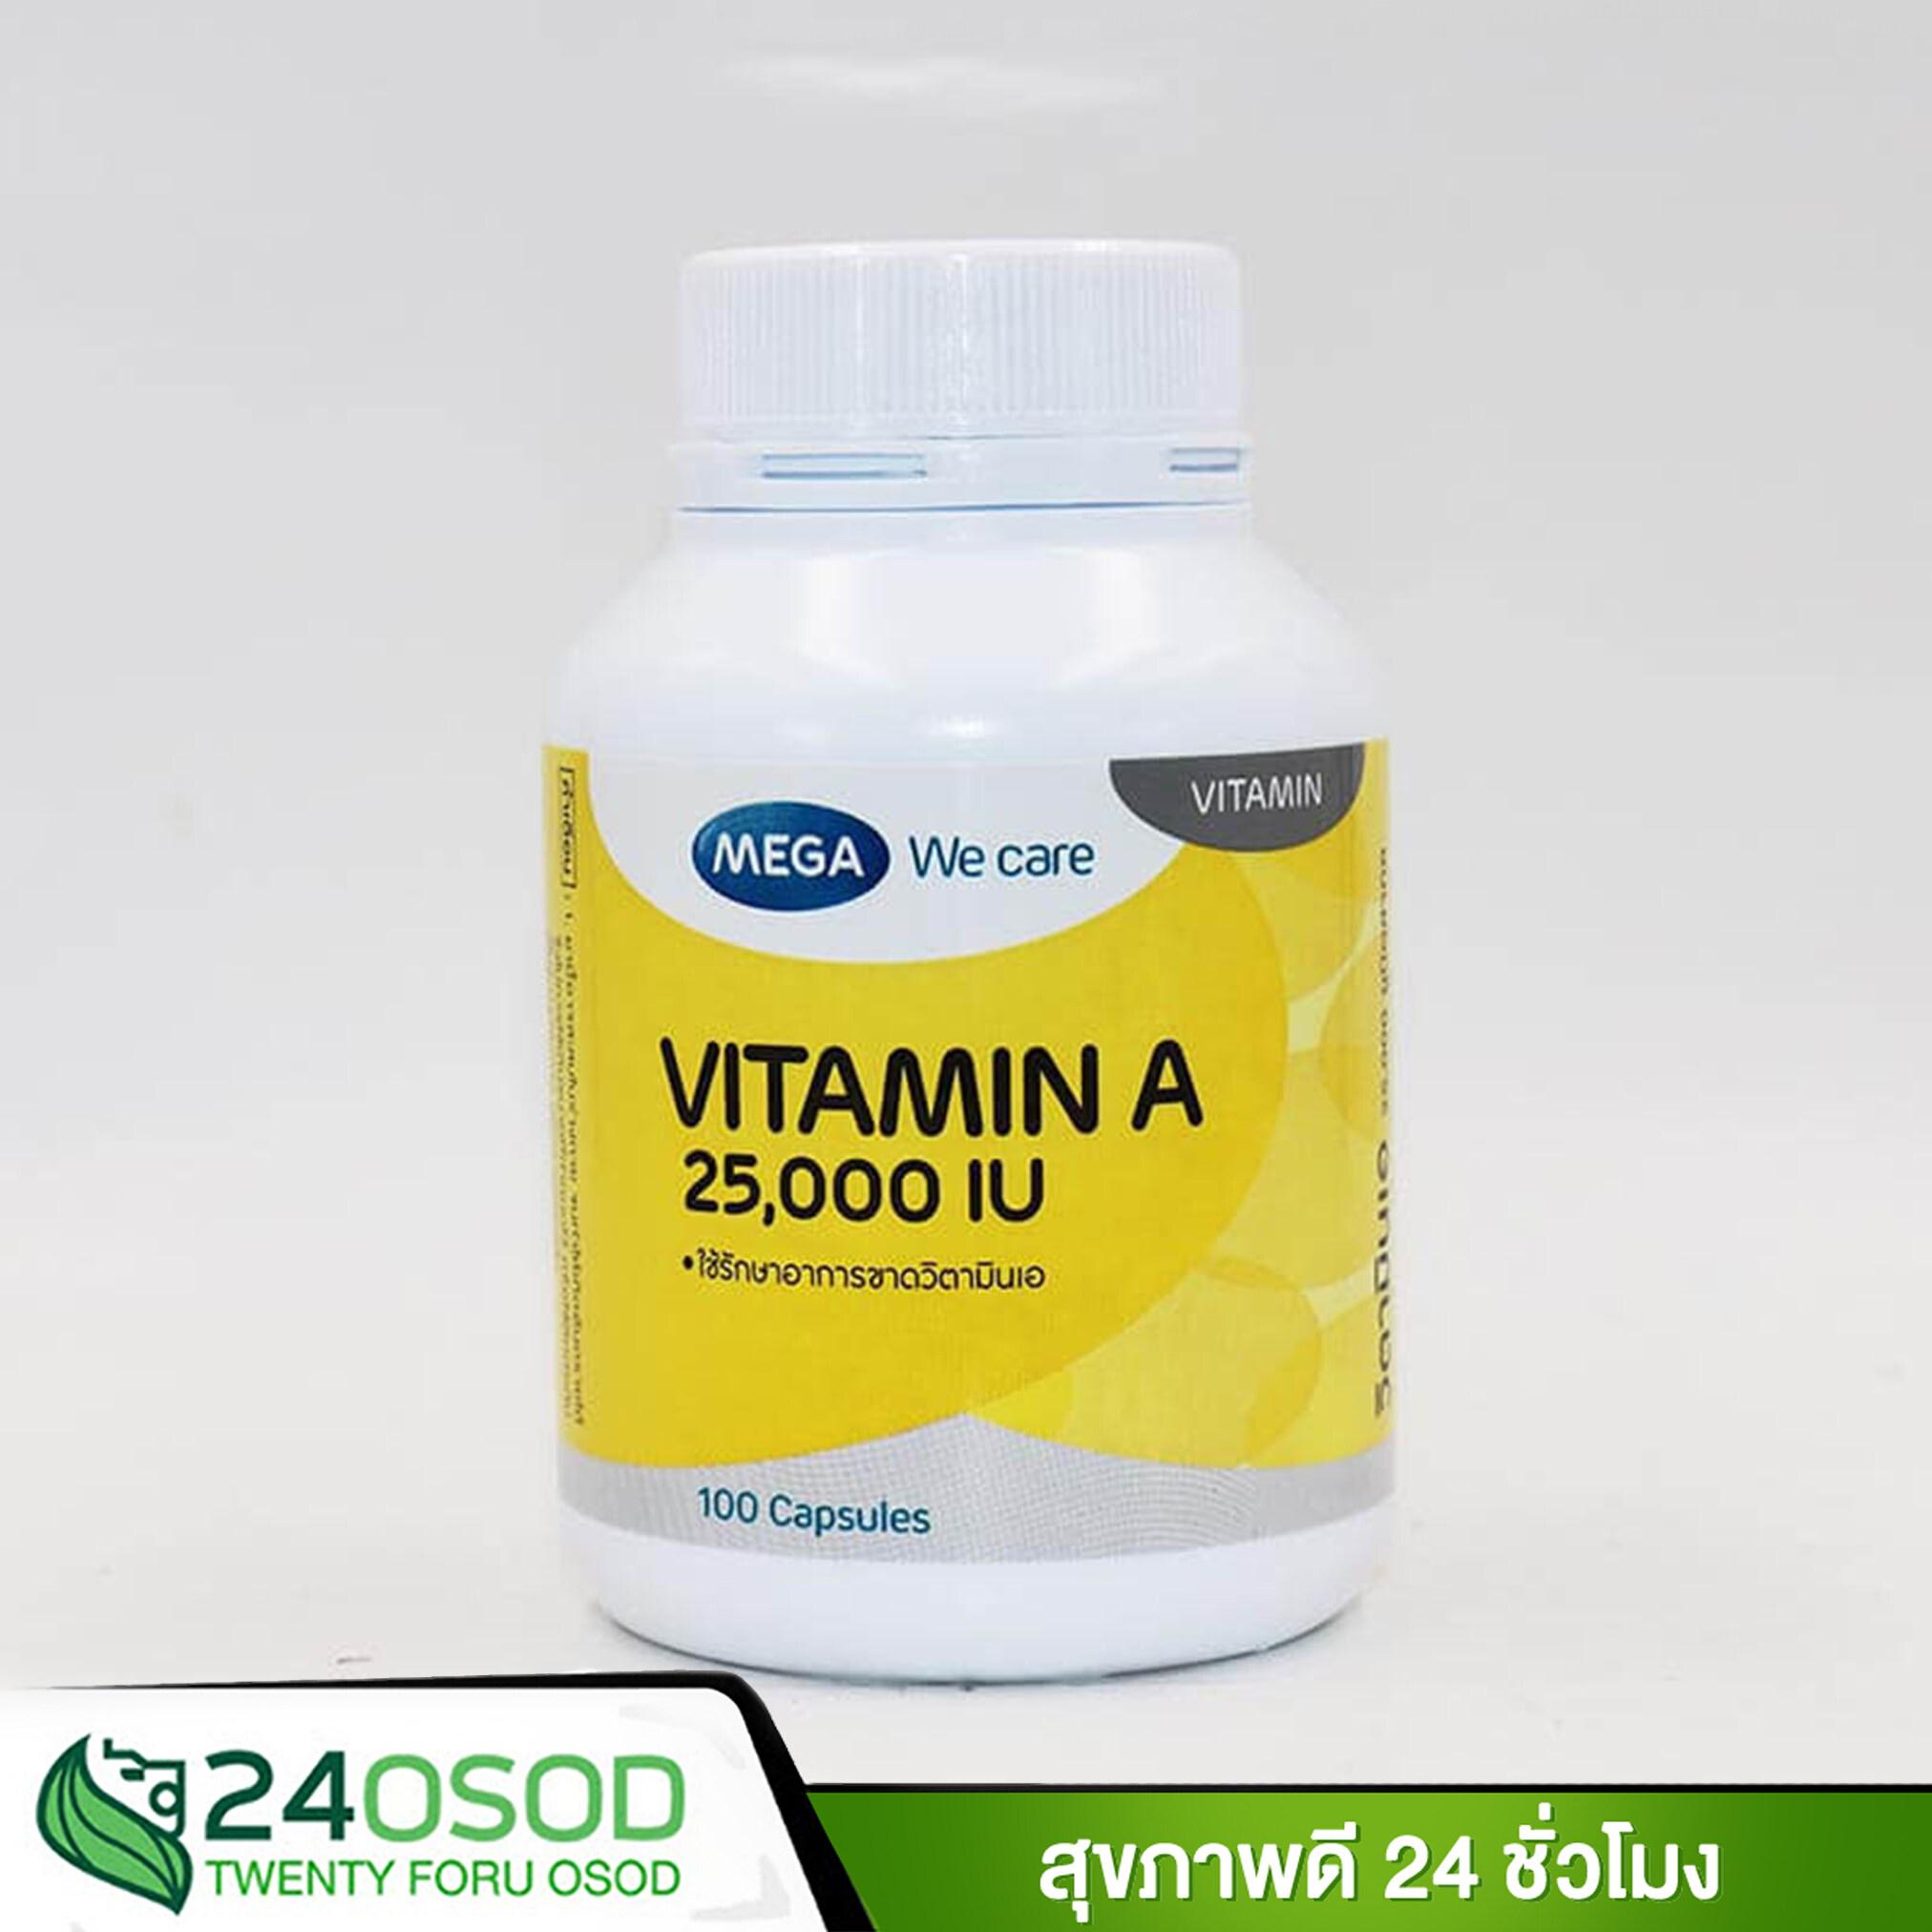 férgek hiánya a vitamin a betegség enterobiasis okozója